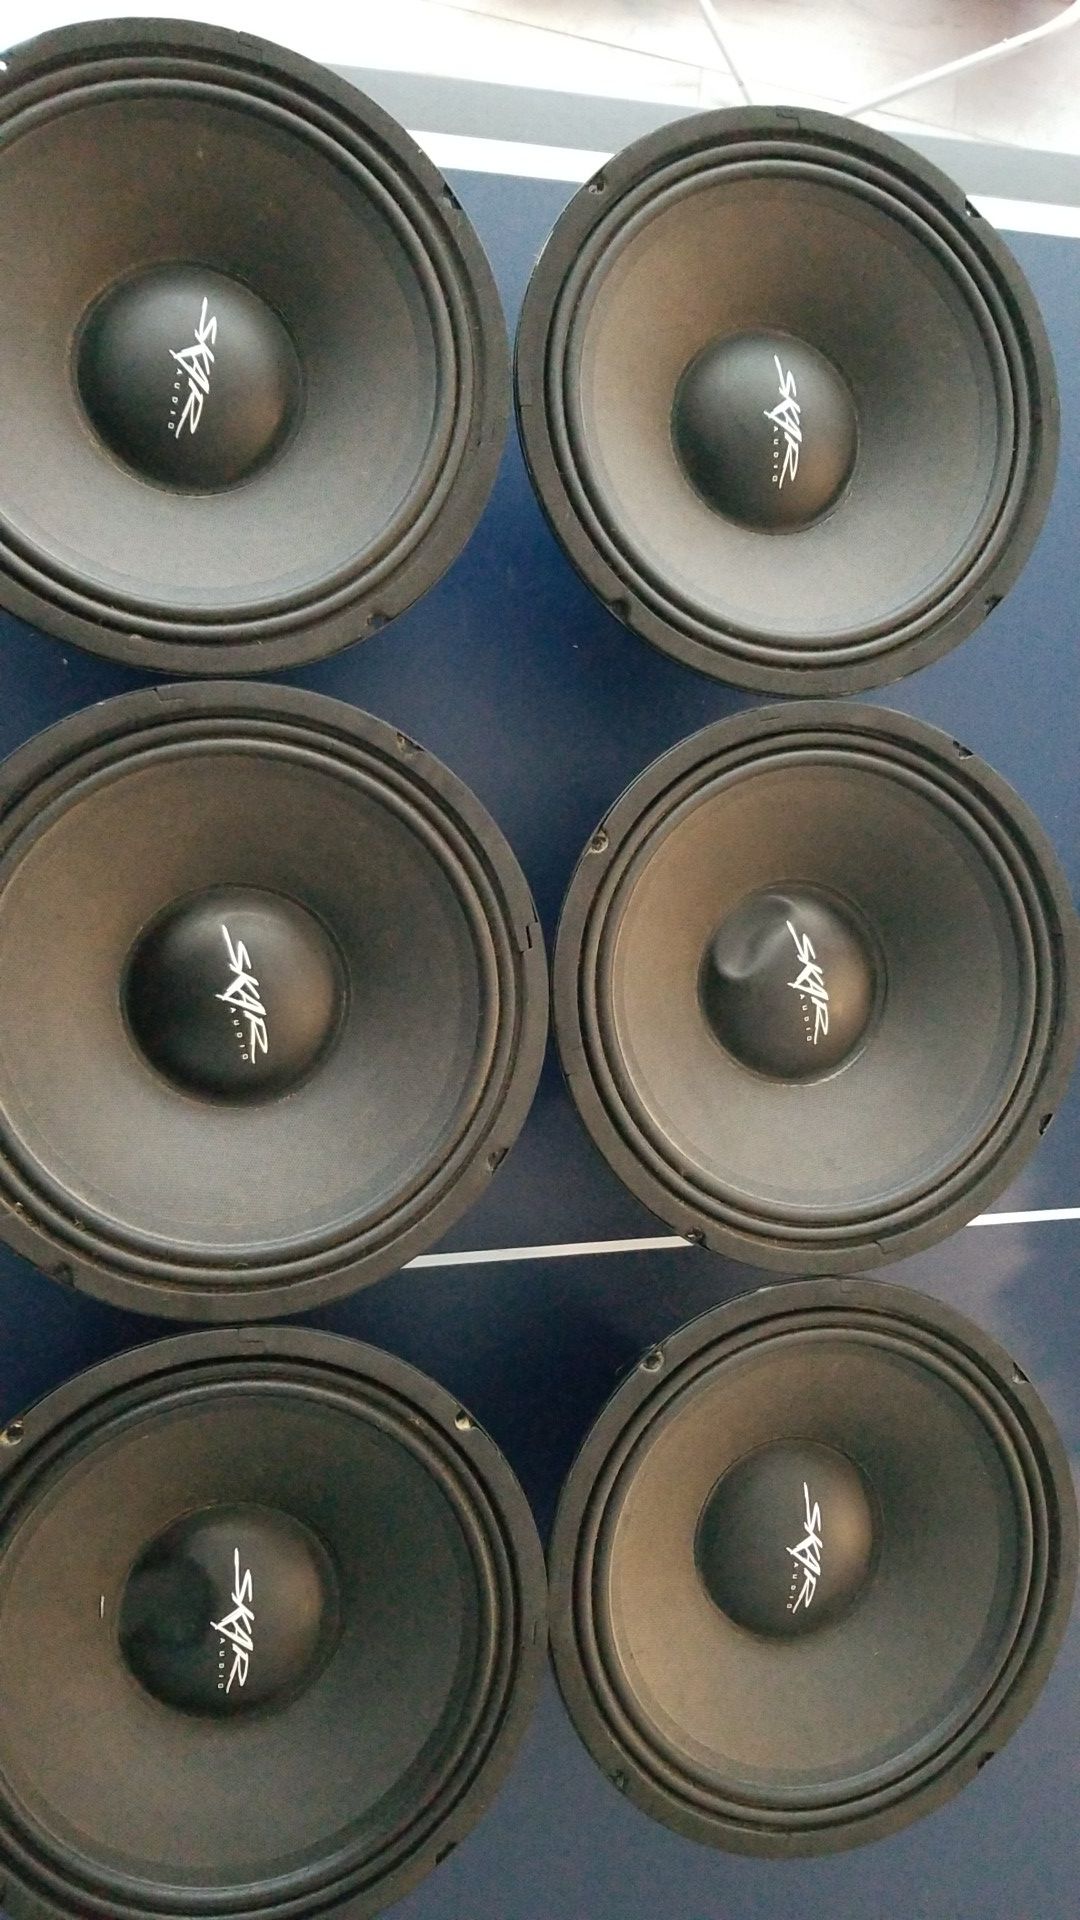 Skar audio 10" speakers